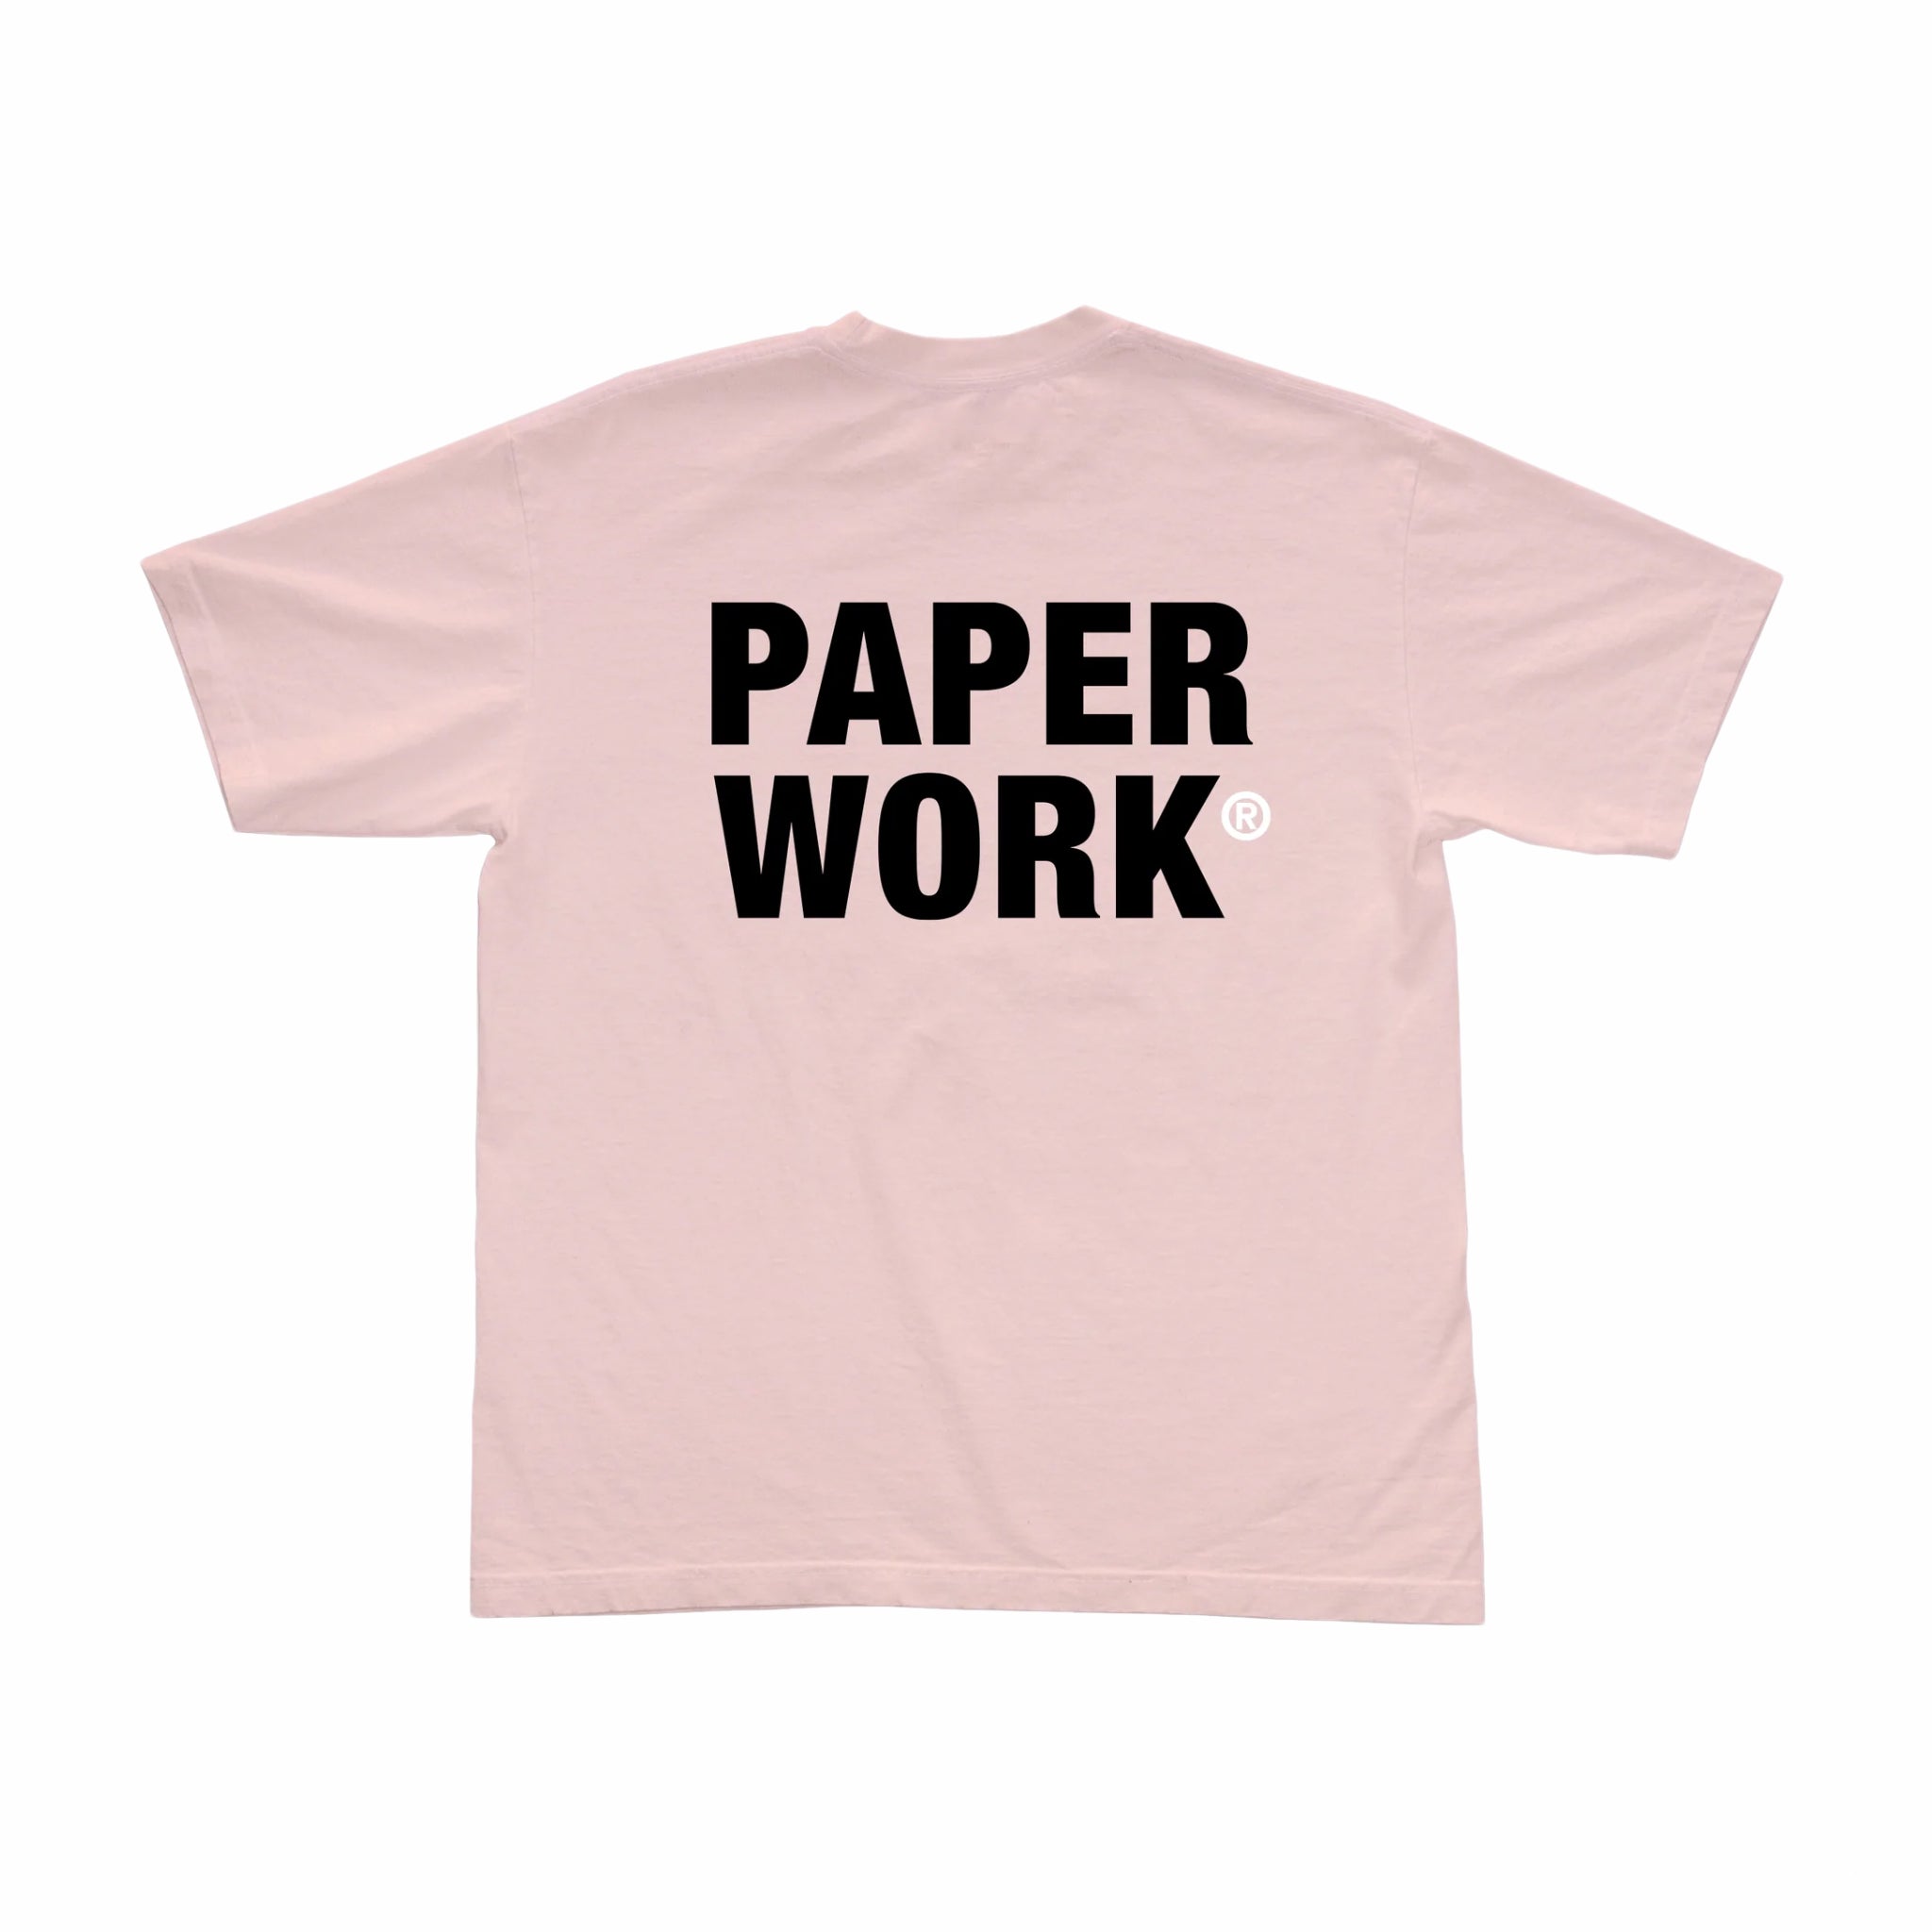 Lavoro cartaceo, T-shirt Paper Work Core P/E (rosa)